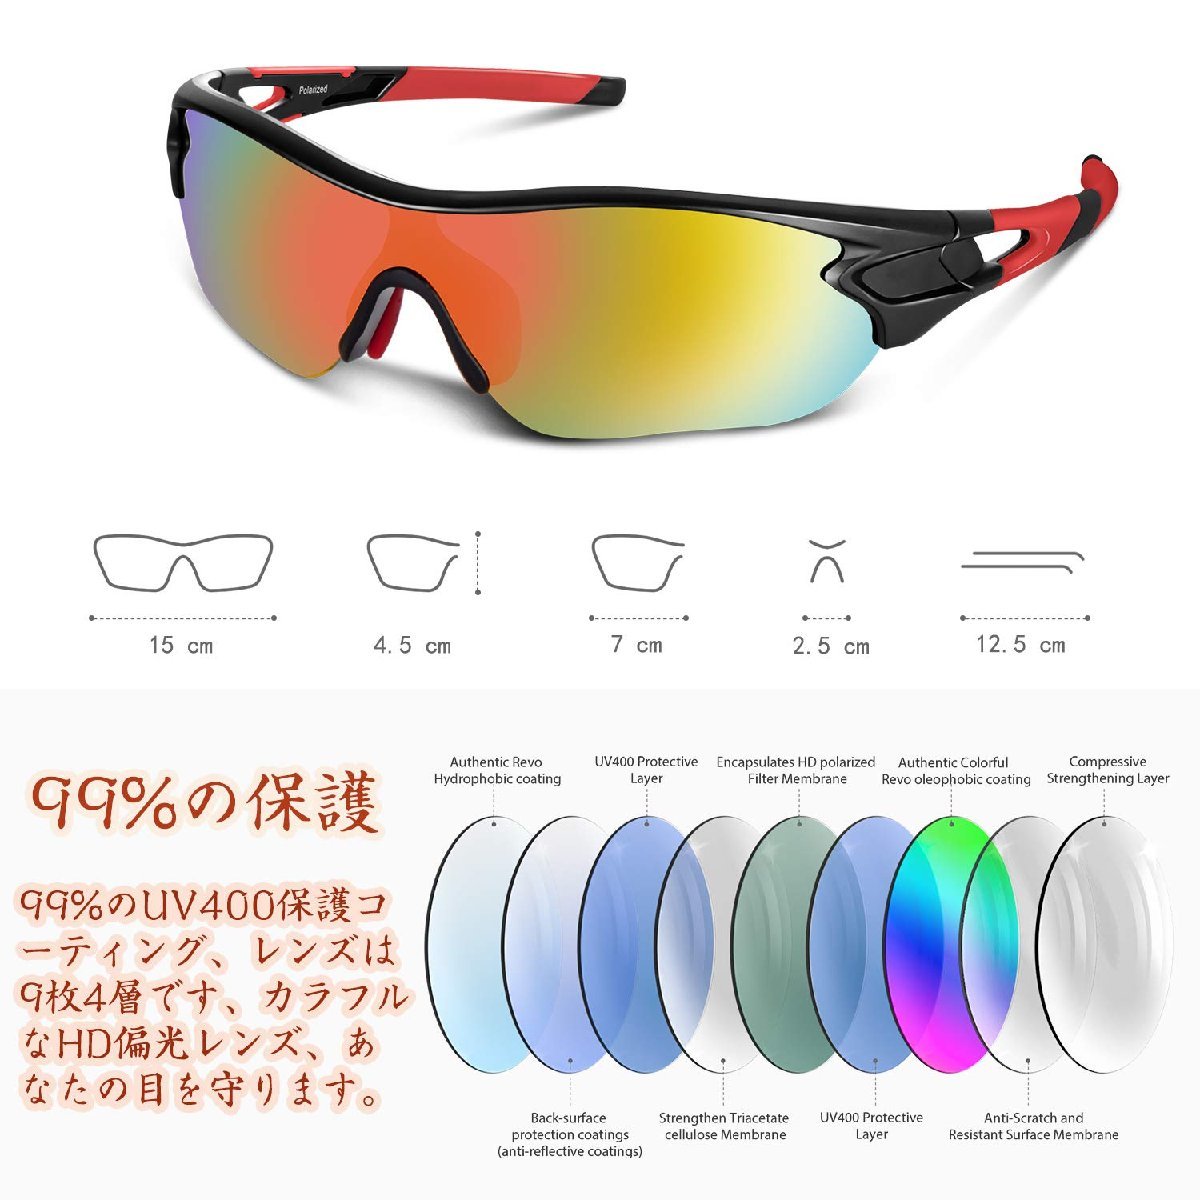  бесплатная доставка *BEACOOL спортивные солнцезащитные очки поляризирующая линза велосипед рыбалка Drive мотоцикл UV400 ( черный / красный )